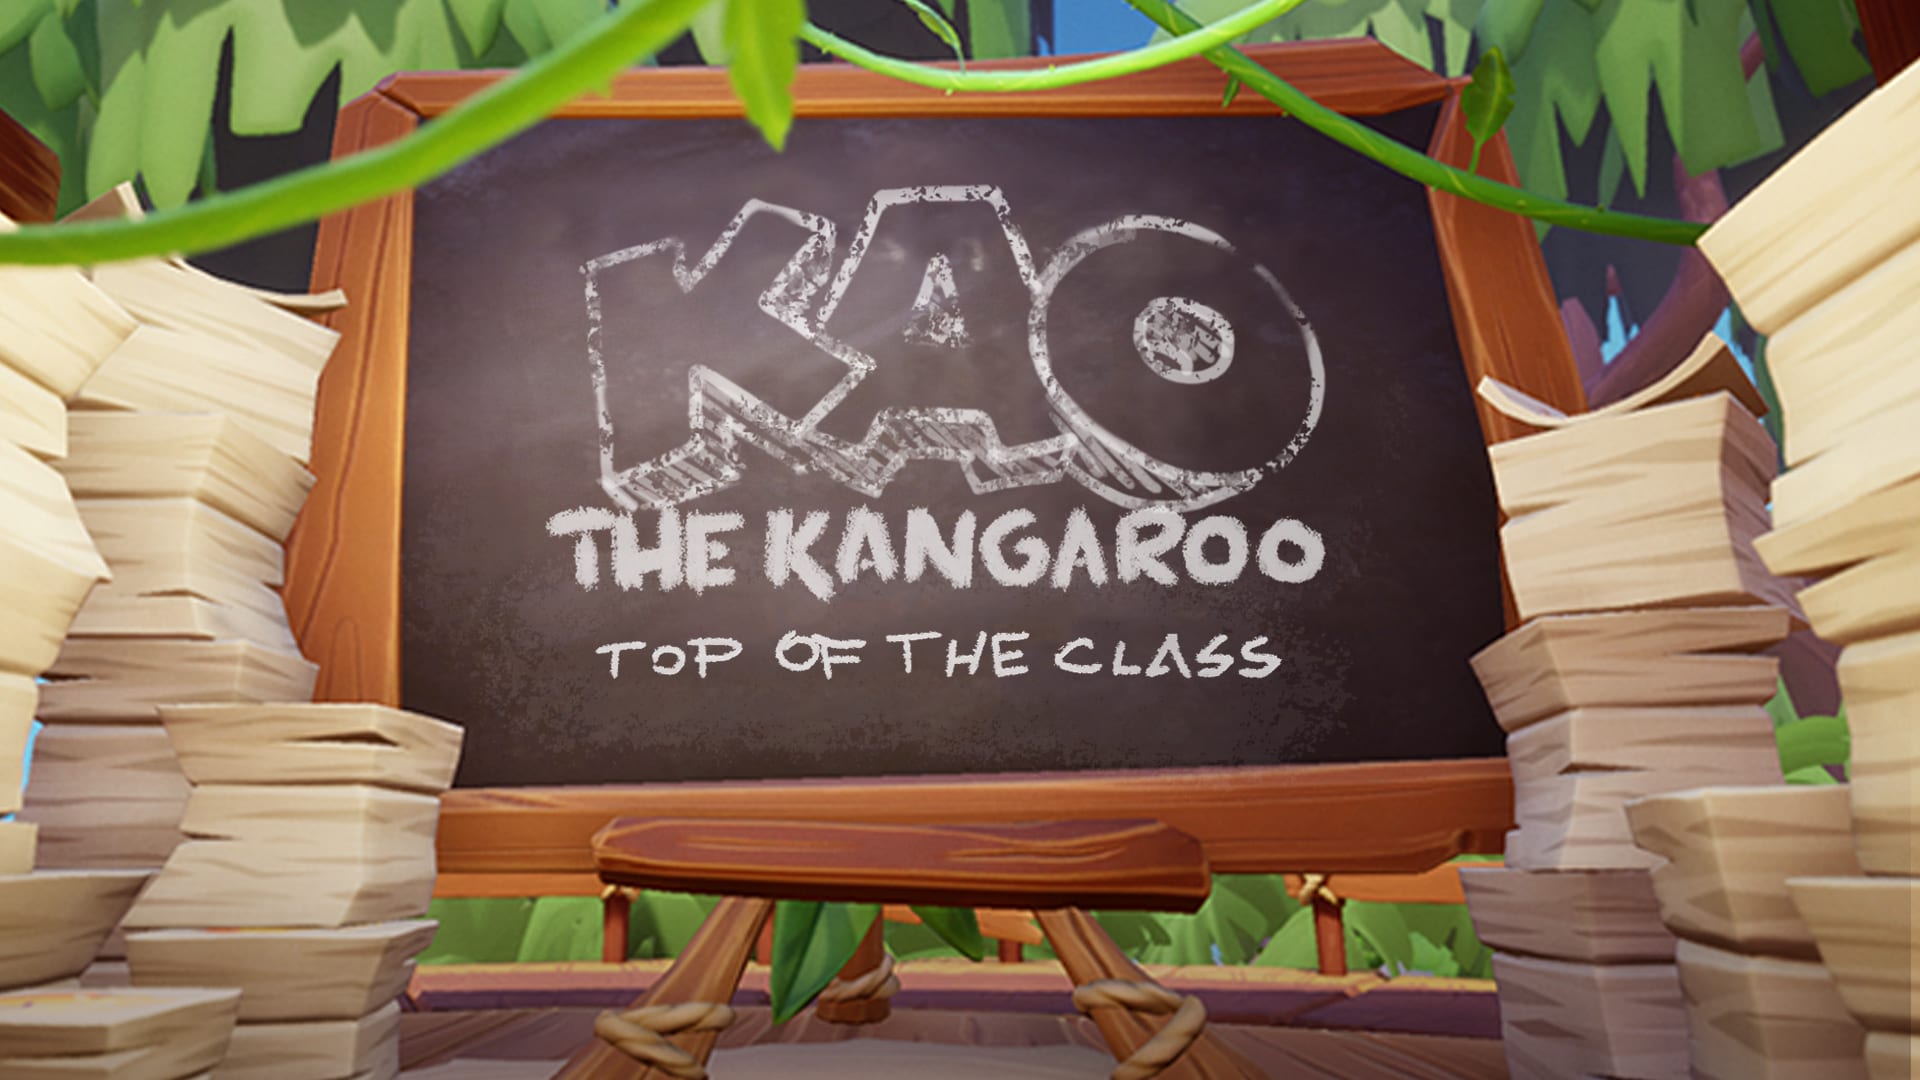 Kao the Kangaroo: Top of the Class